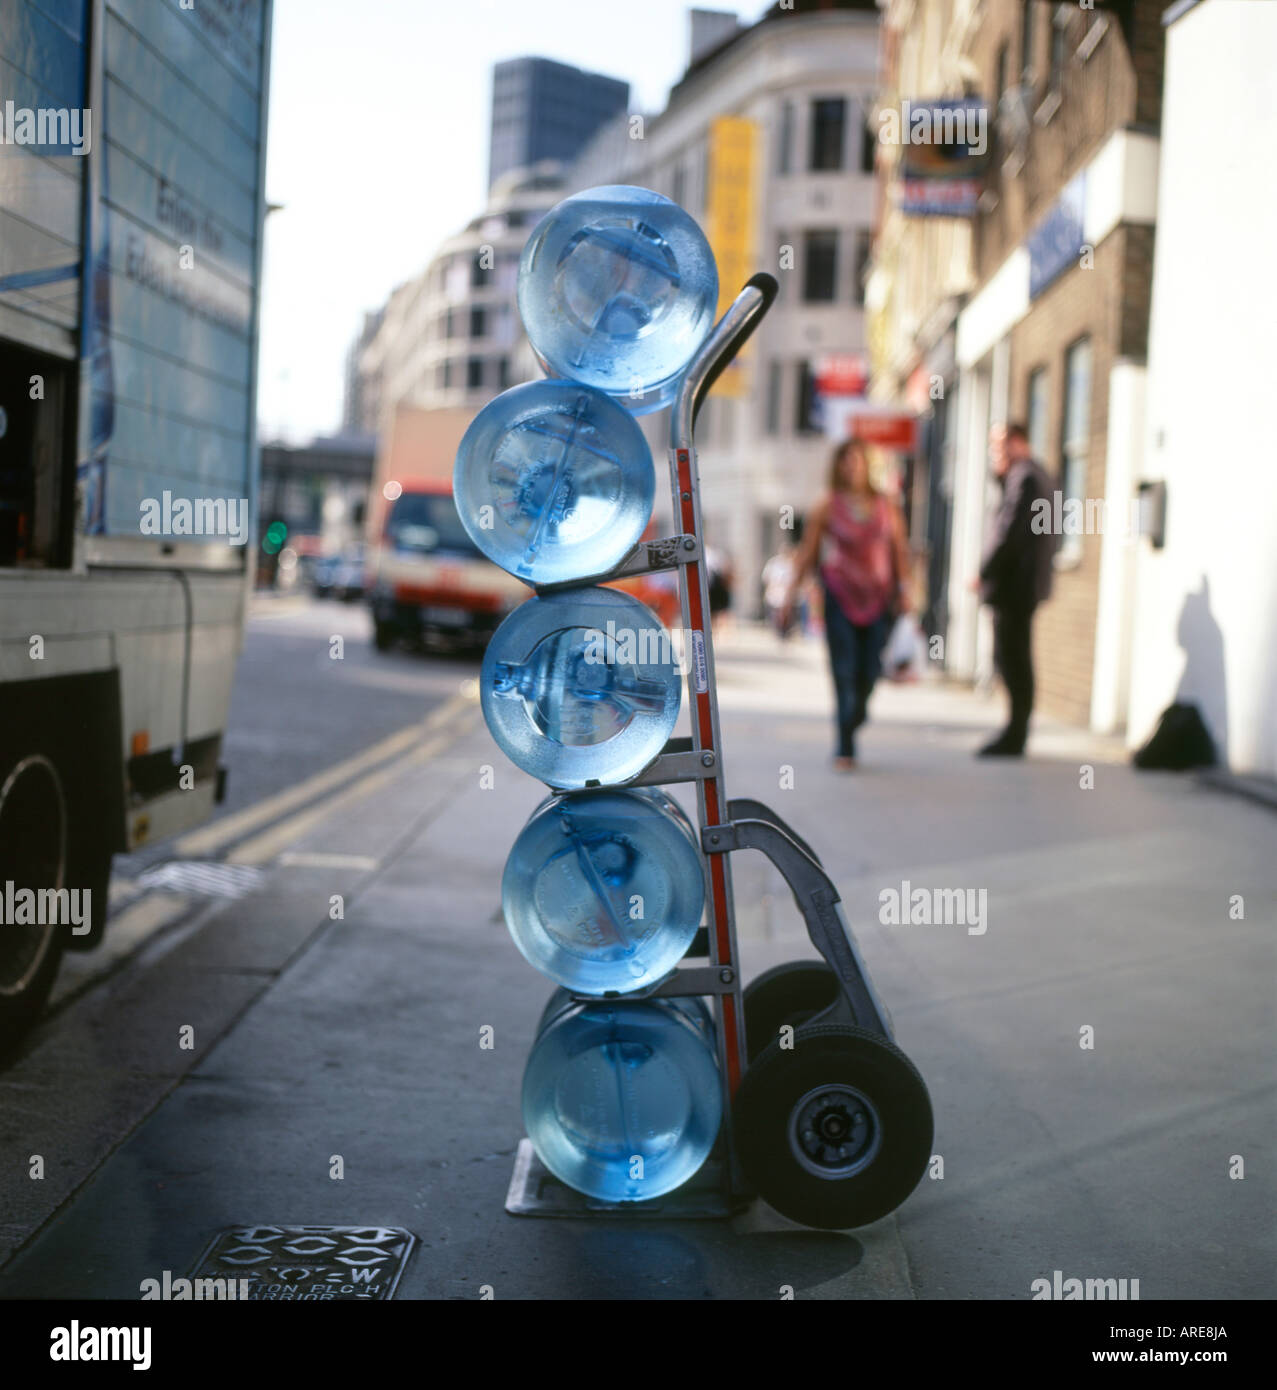 Refroidisseur d'eau bouteilles empilées sur un chariot de livraison dans une rue du centre de Londres, Angleterre, Royaume-Uni Banque D'Images